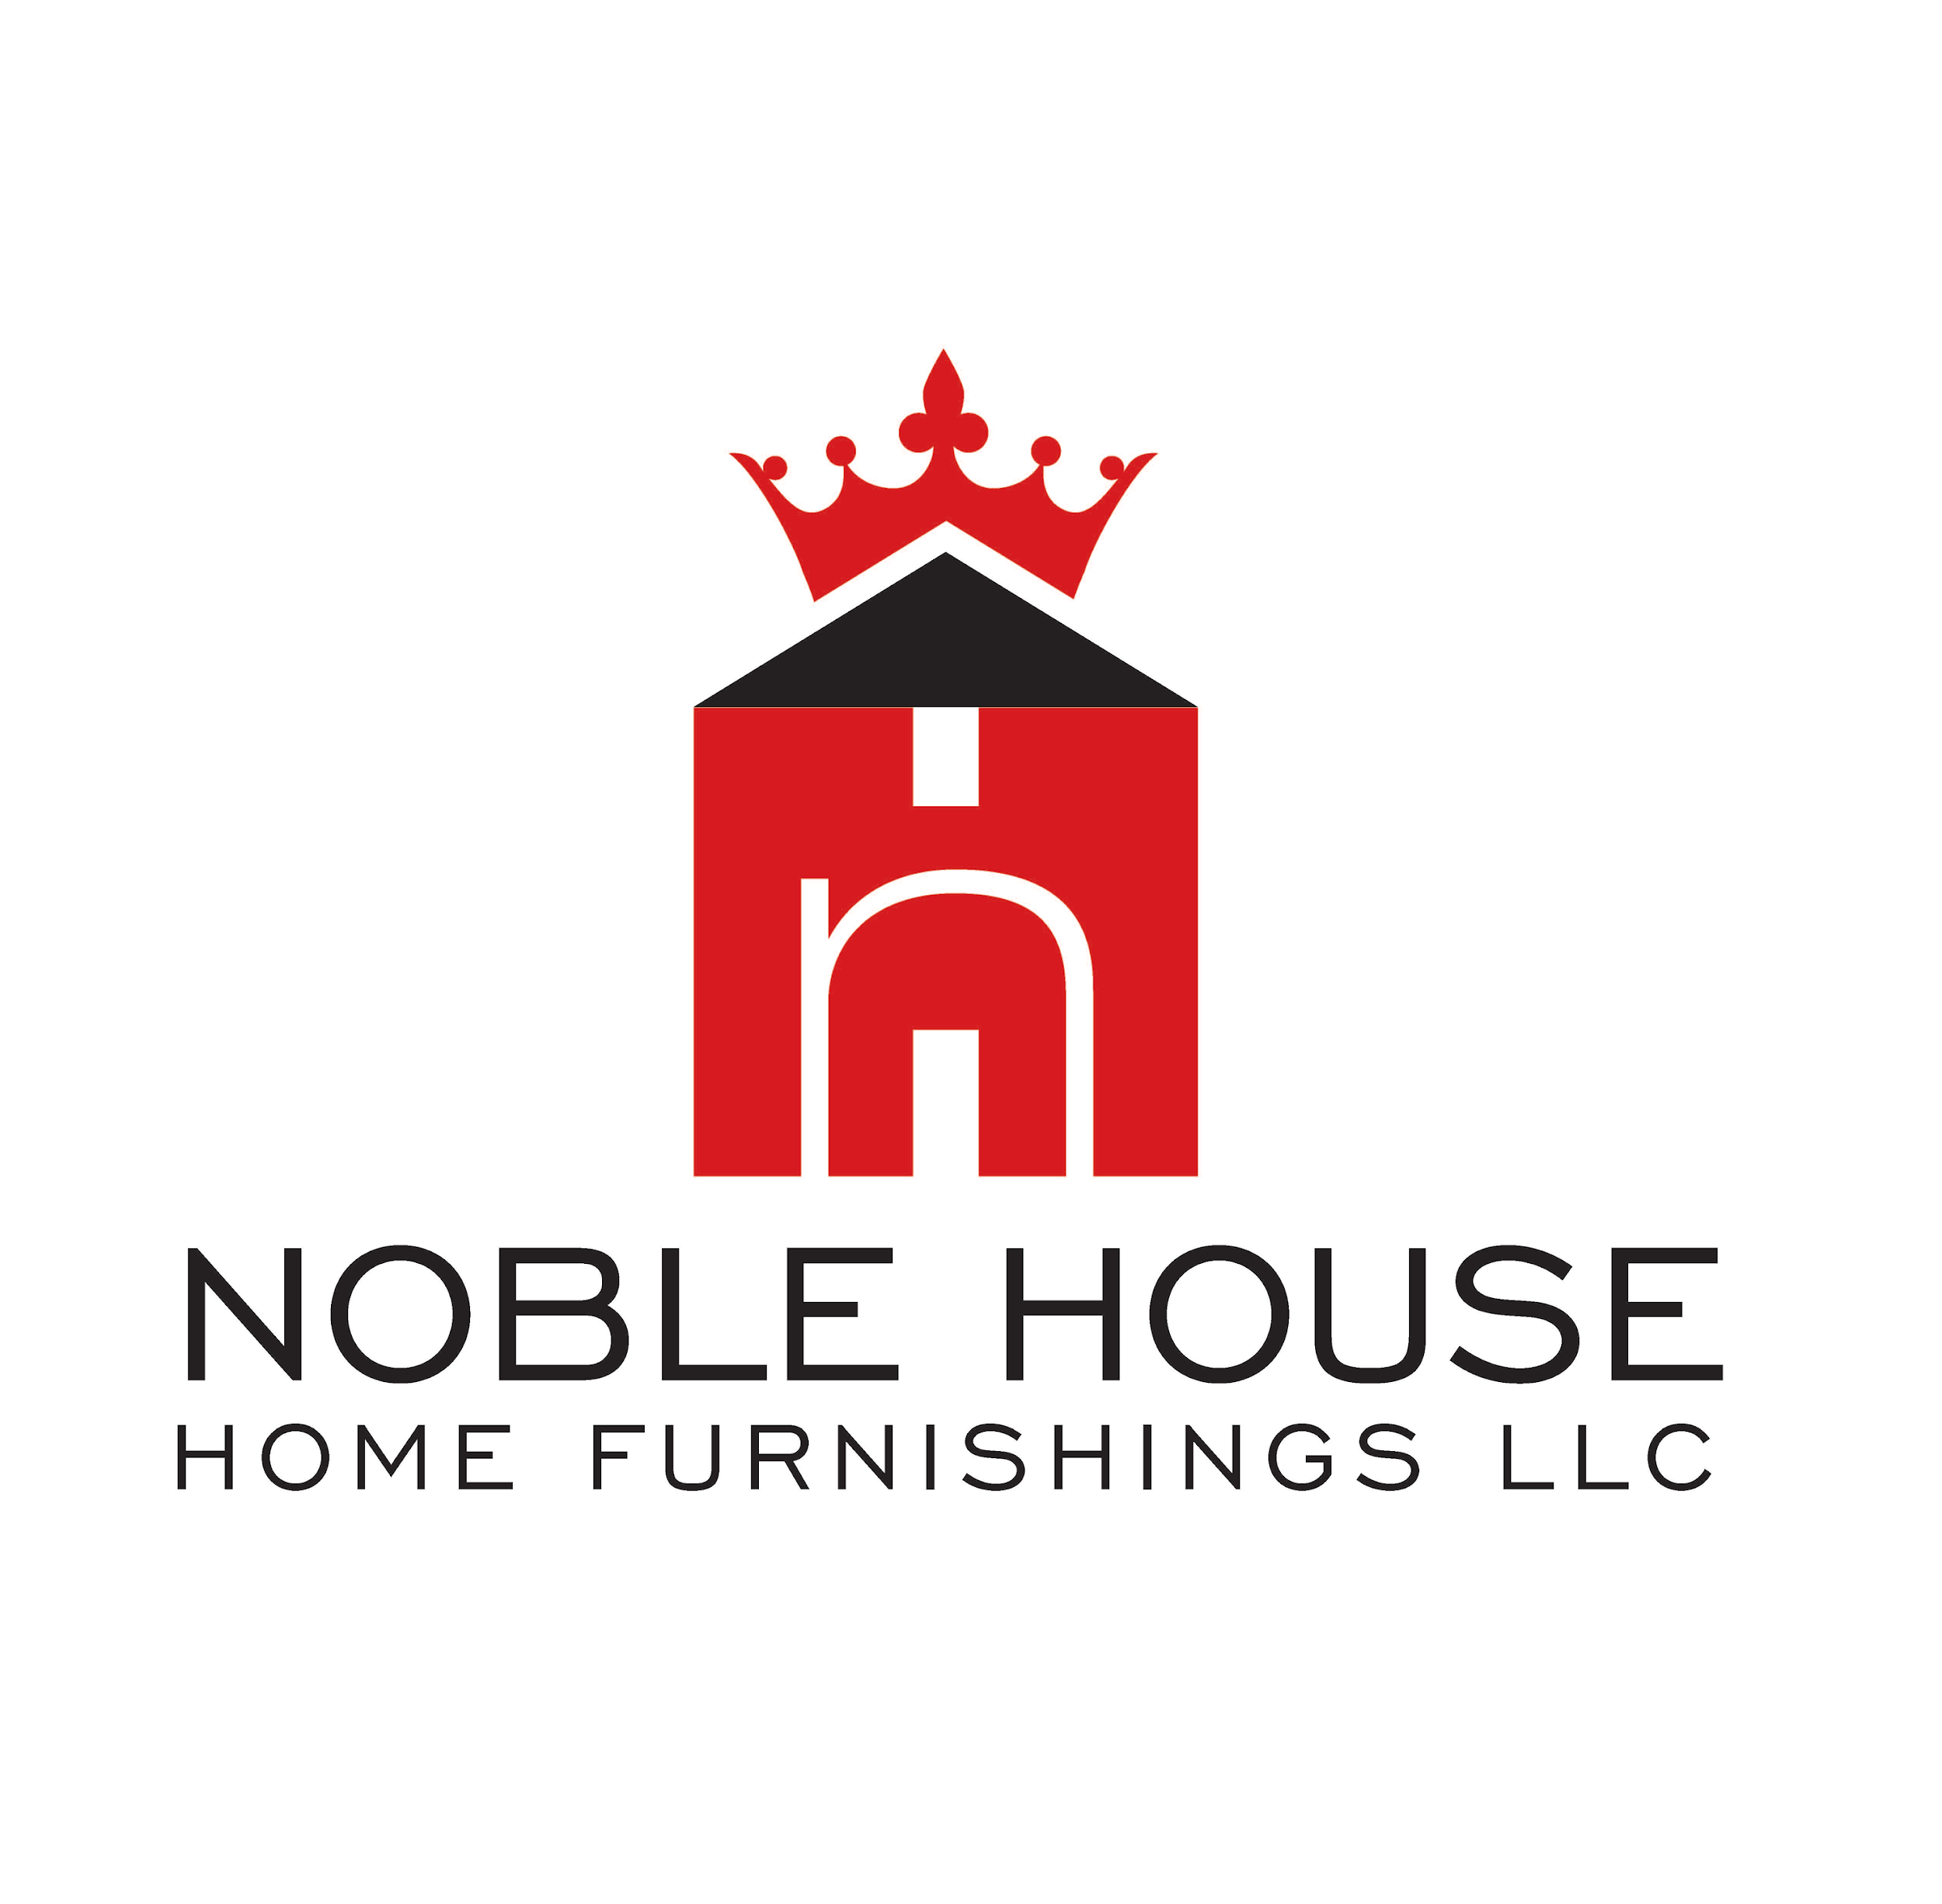 Noble House Home Furnishings, LLC